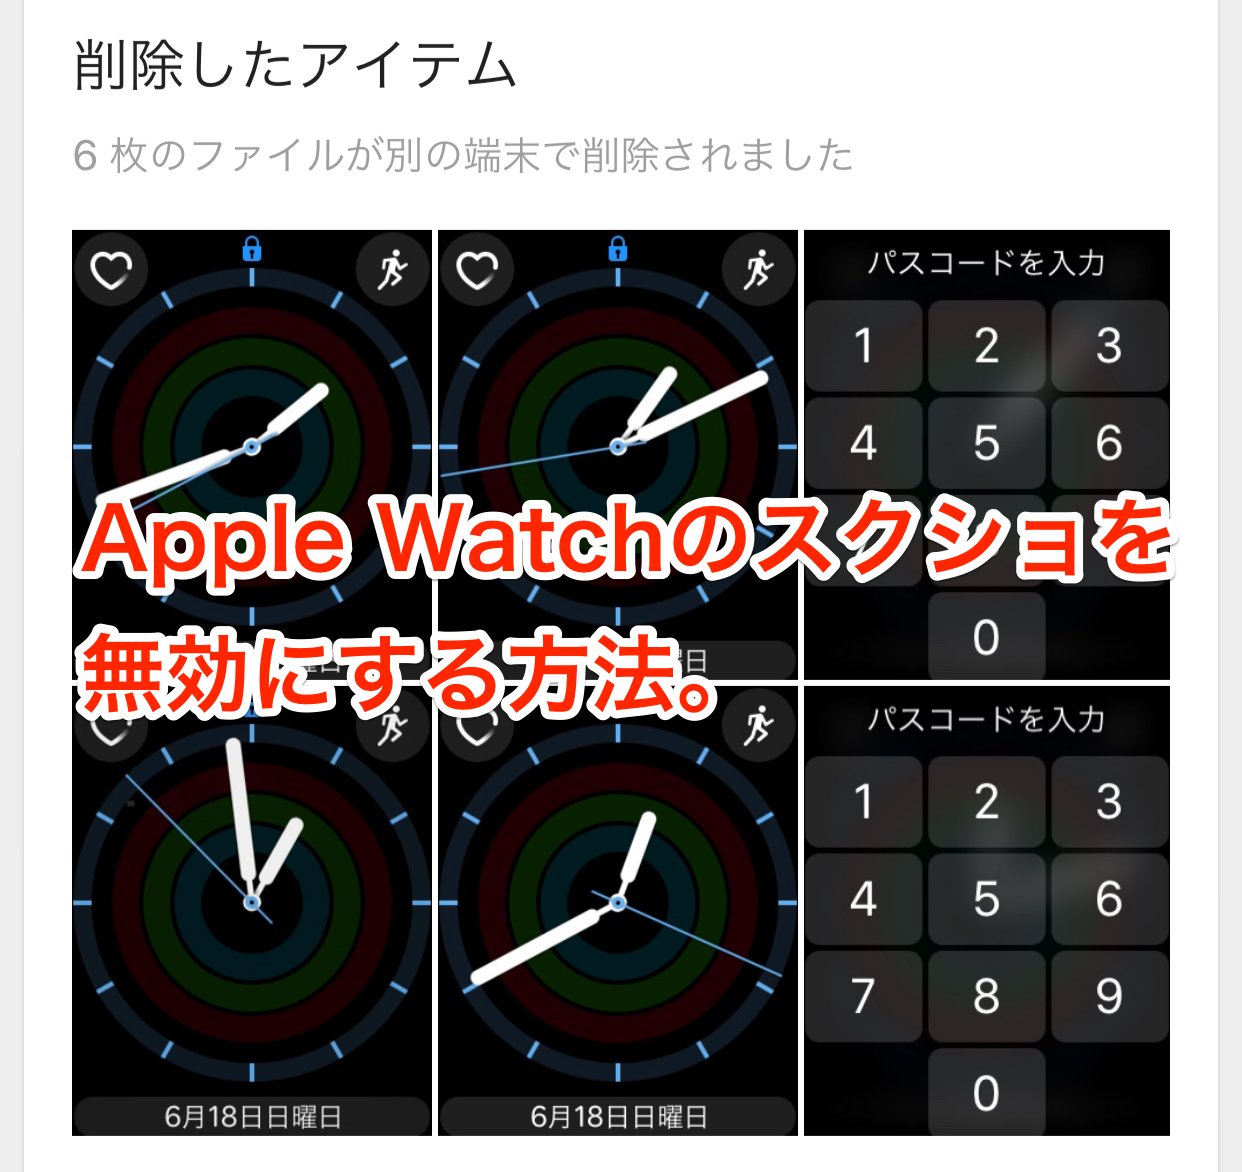 [Apple Watch Tips] スクリーンショットを無効にして、勝手にスクショが増えるのを防ごう